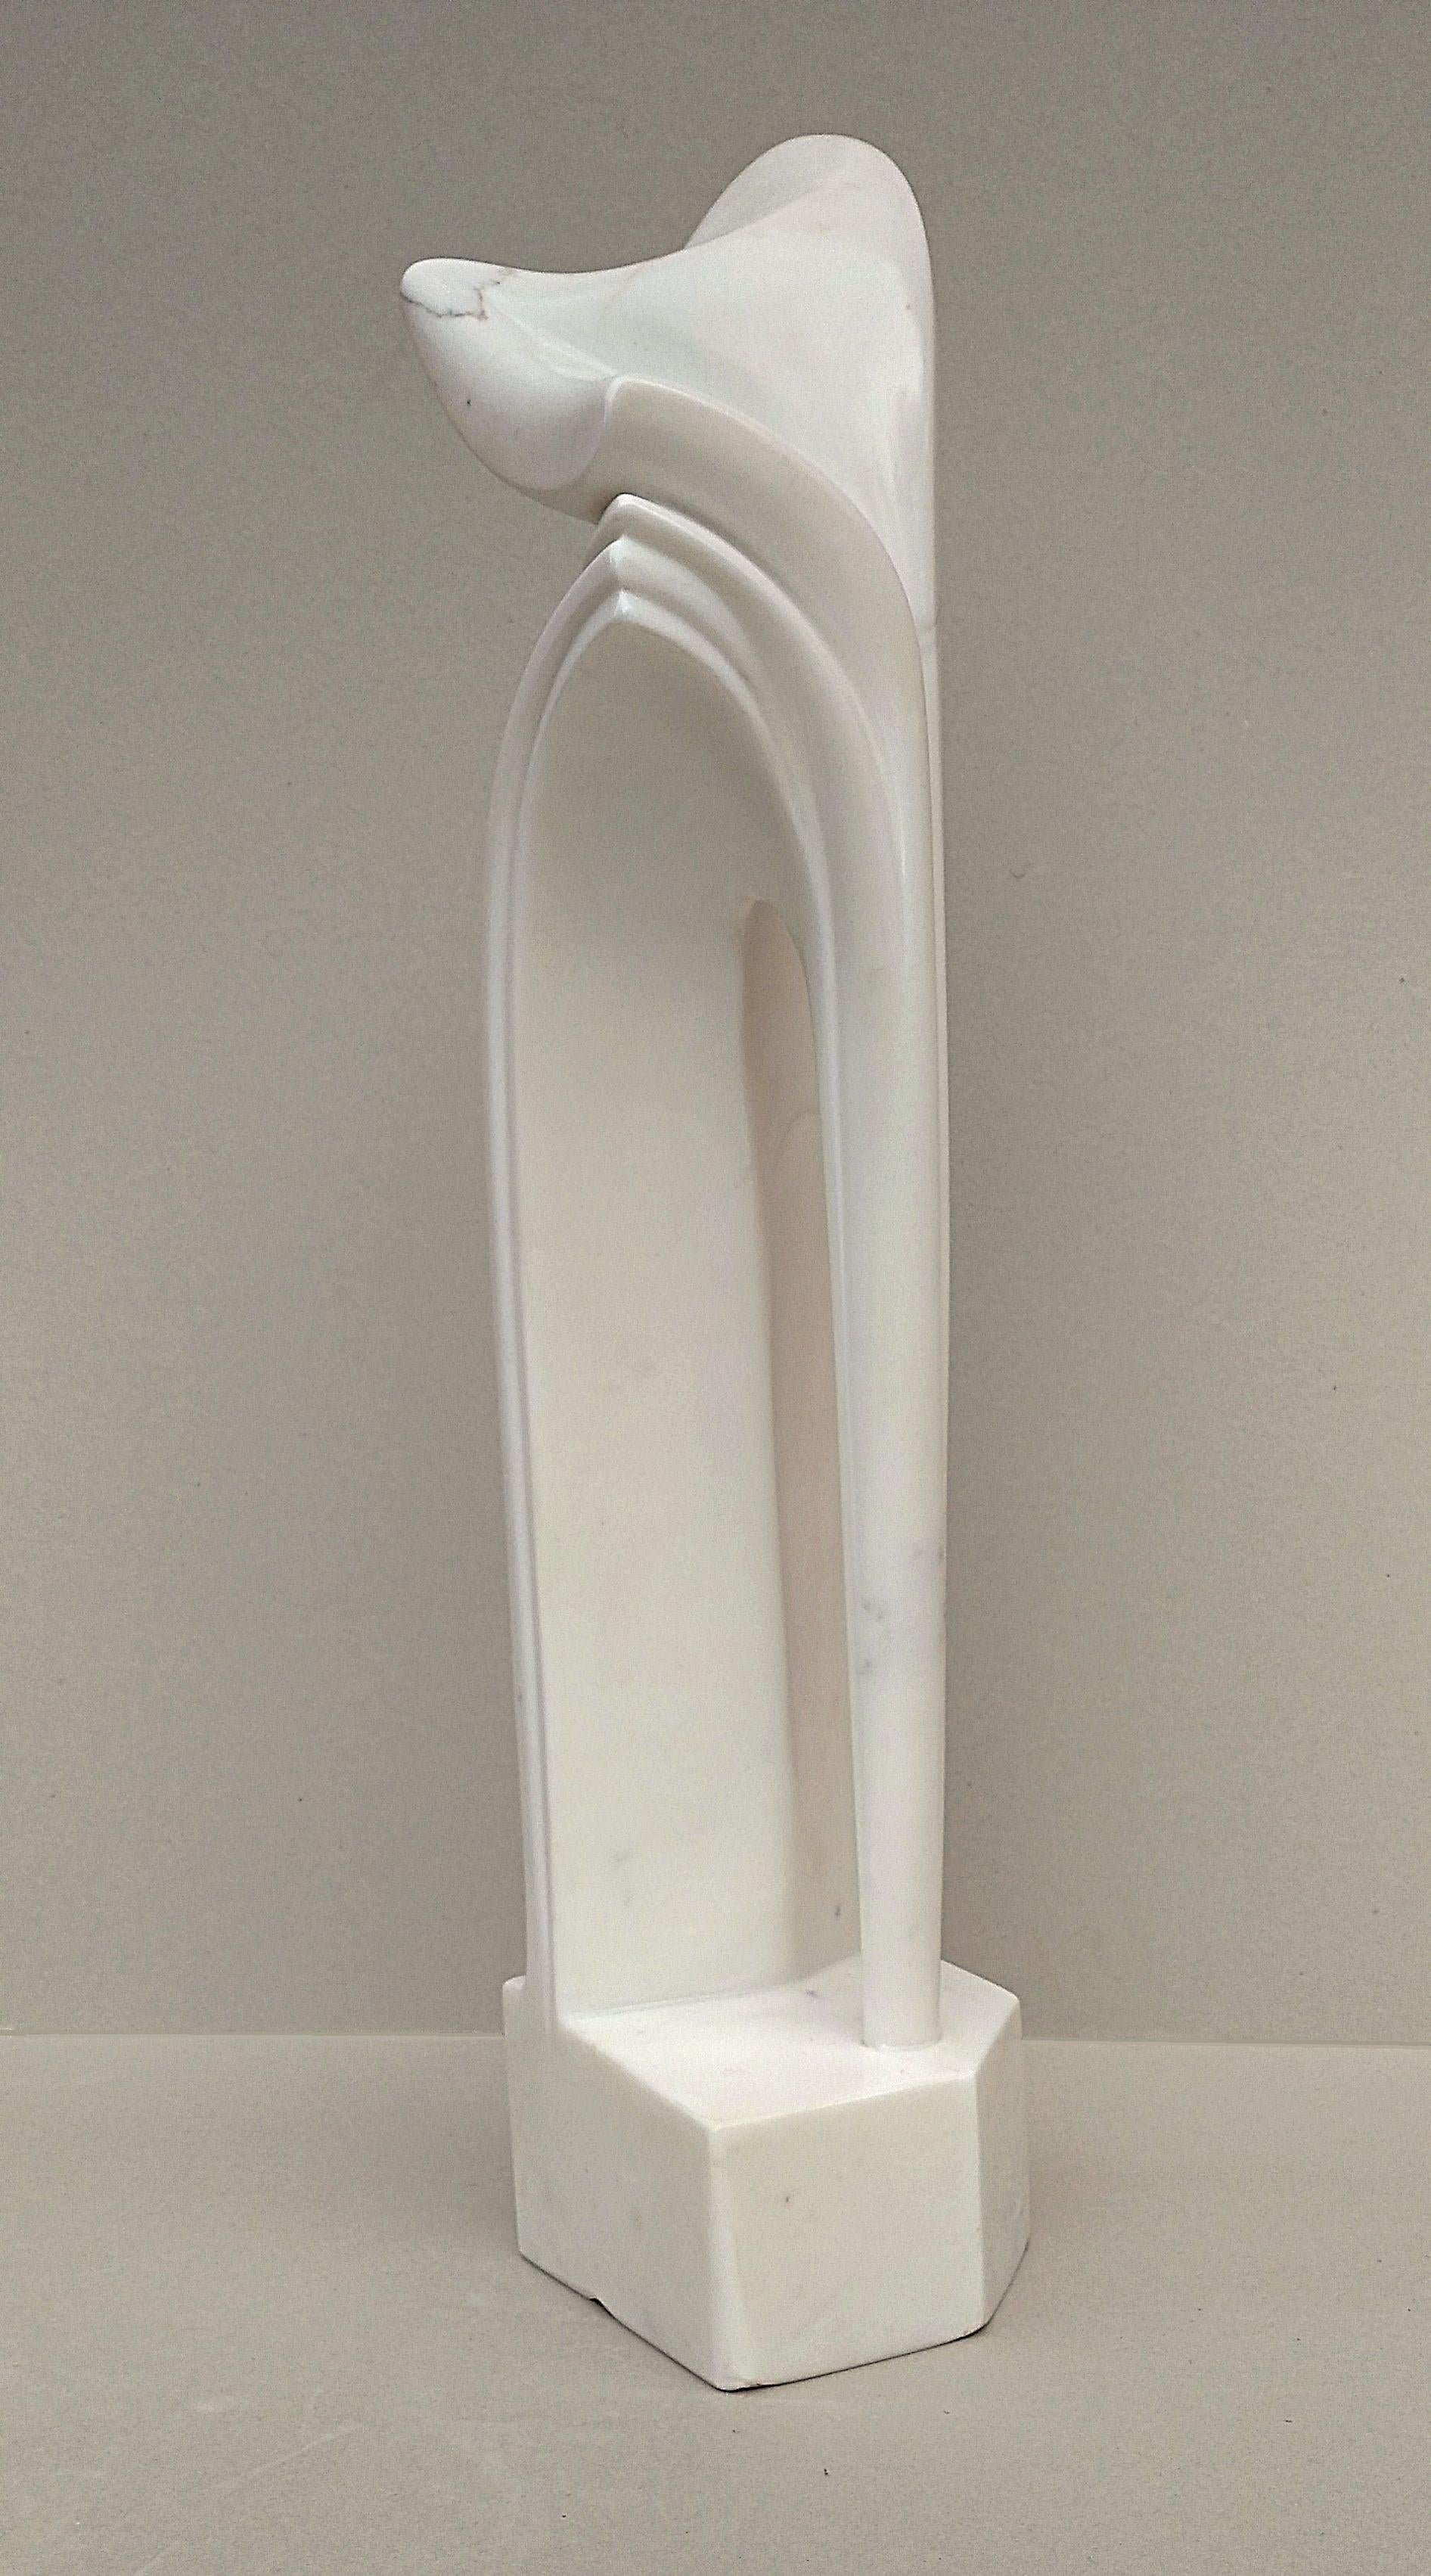 Gebogener Bogen, ungewöhnliche vertikale figurative Skulptur aus weißem Carrara-Statuenmarmorstein (Moderne), Sculpture, von Lutfi Romhein